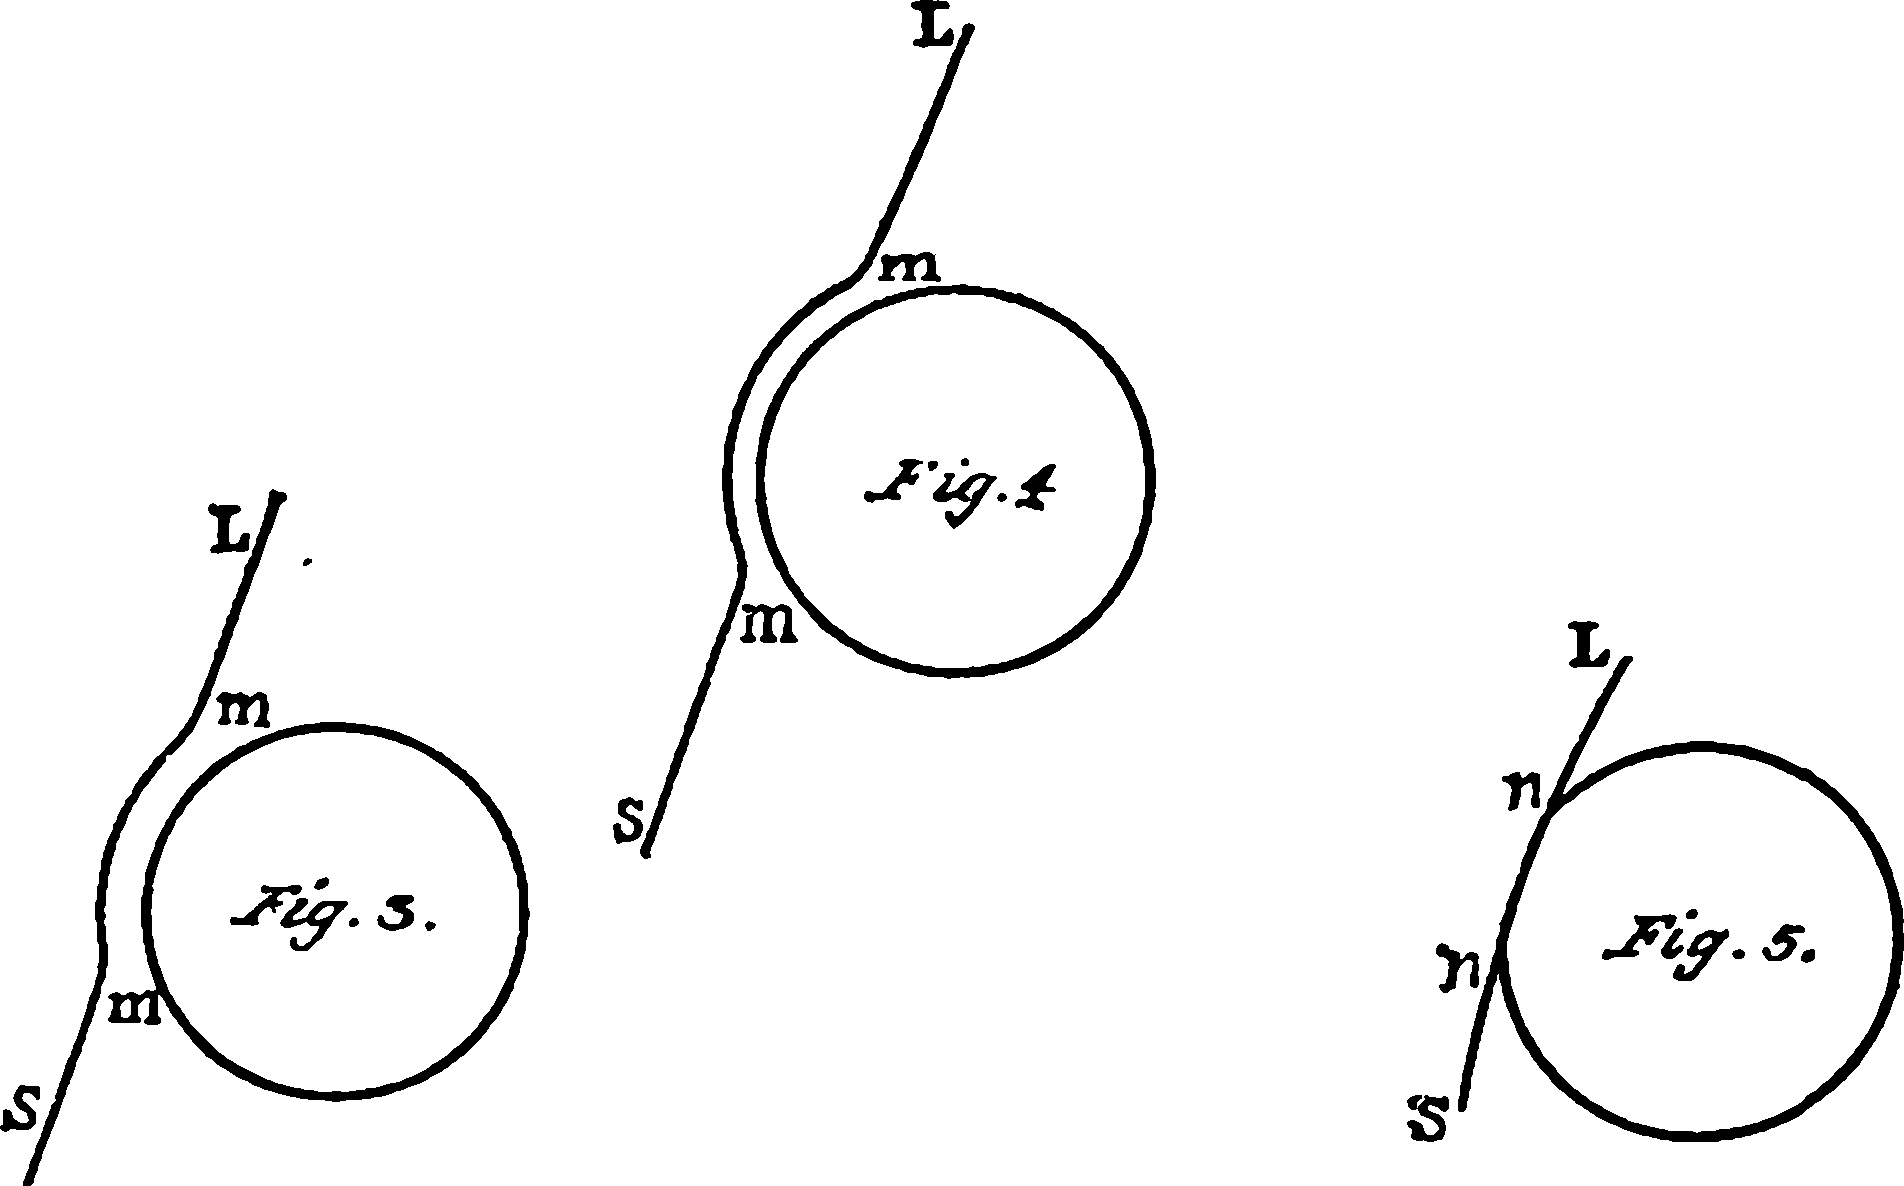 Рис. 6. Рисунки М.В. Ломоносова к описанию его наблюдений прохождения Венеры по диску Солнца 26 мая 1761 г.